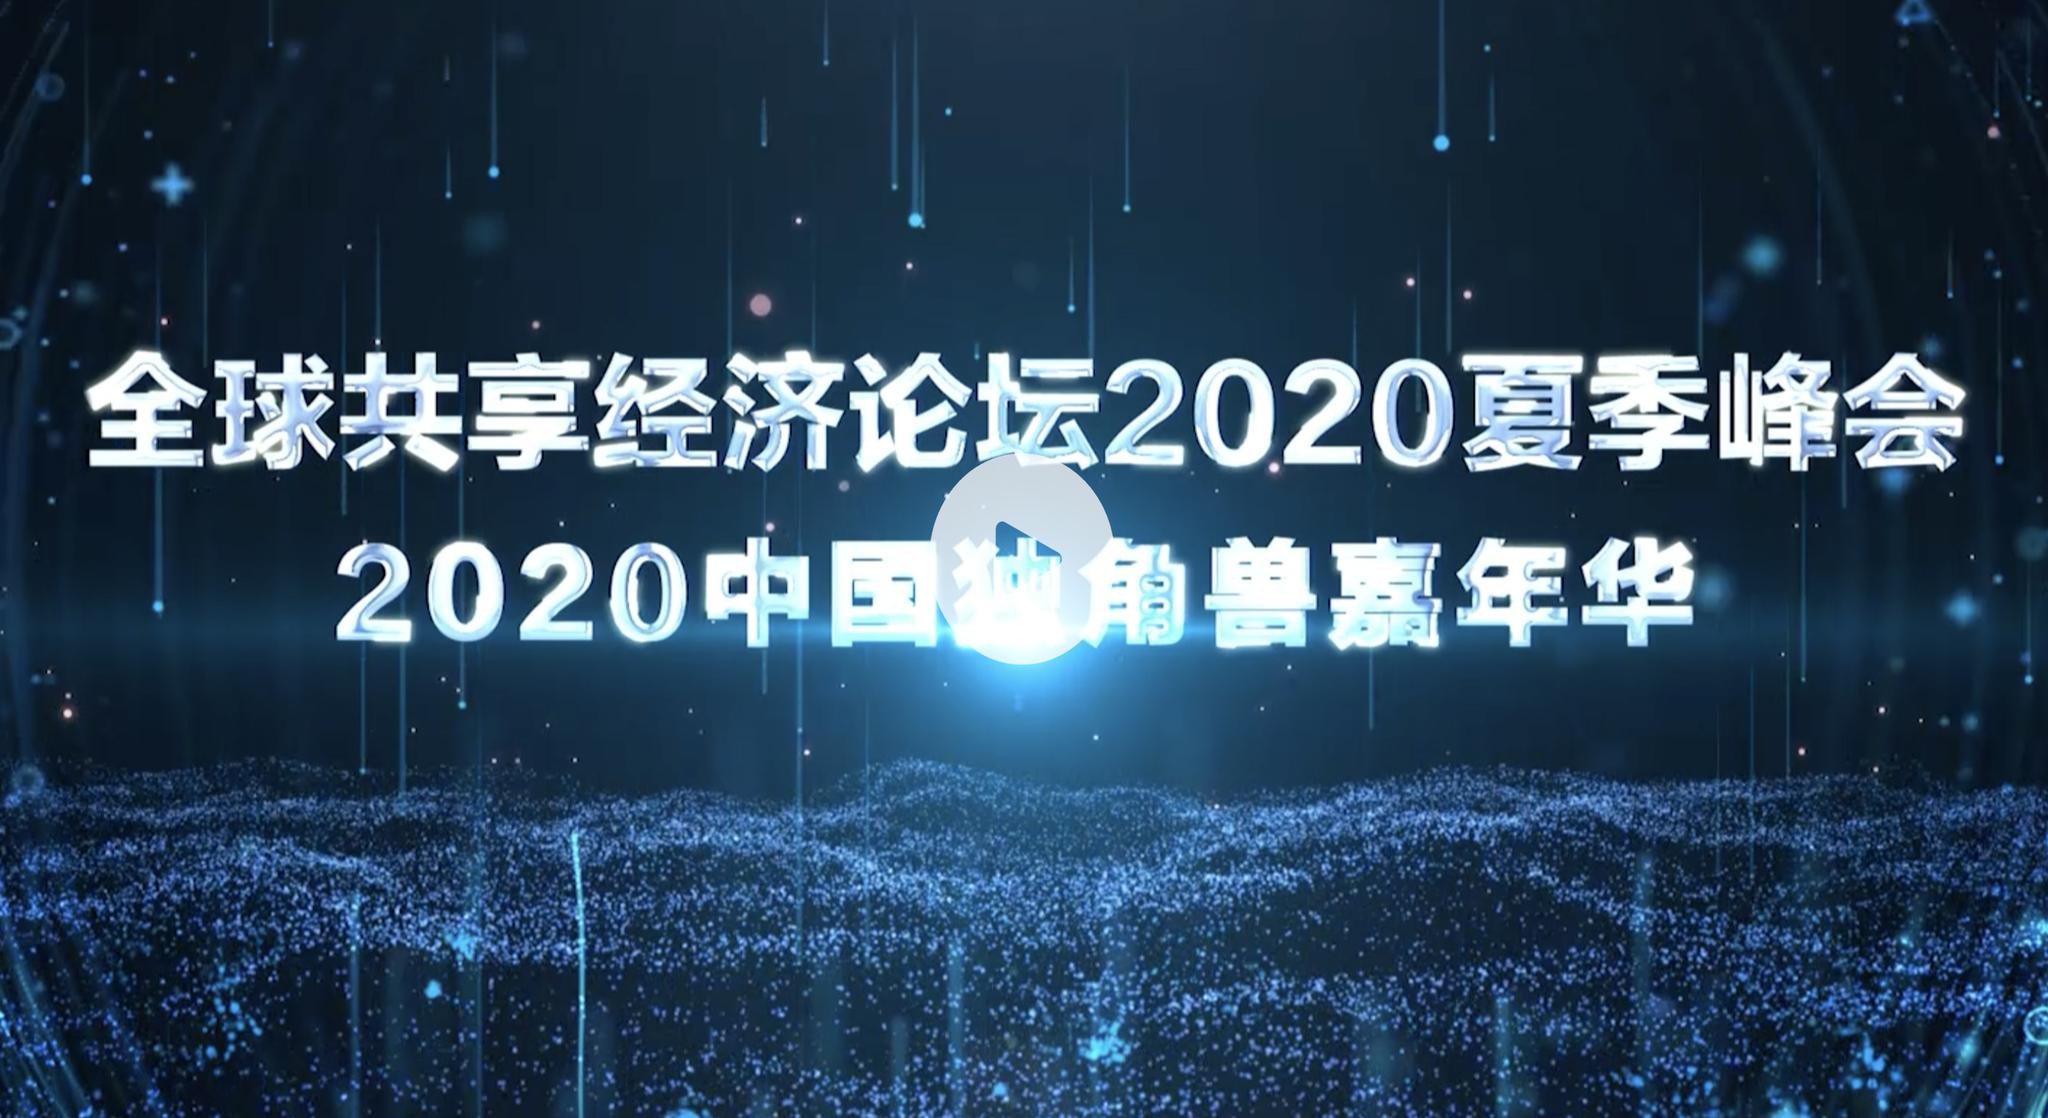 全球共享经济论坛2020夏季峰会